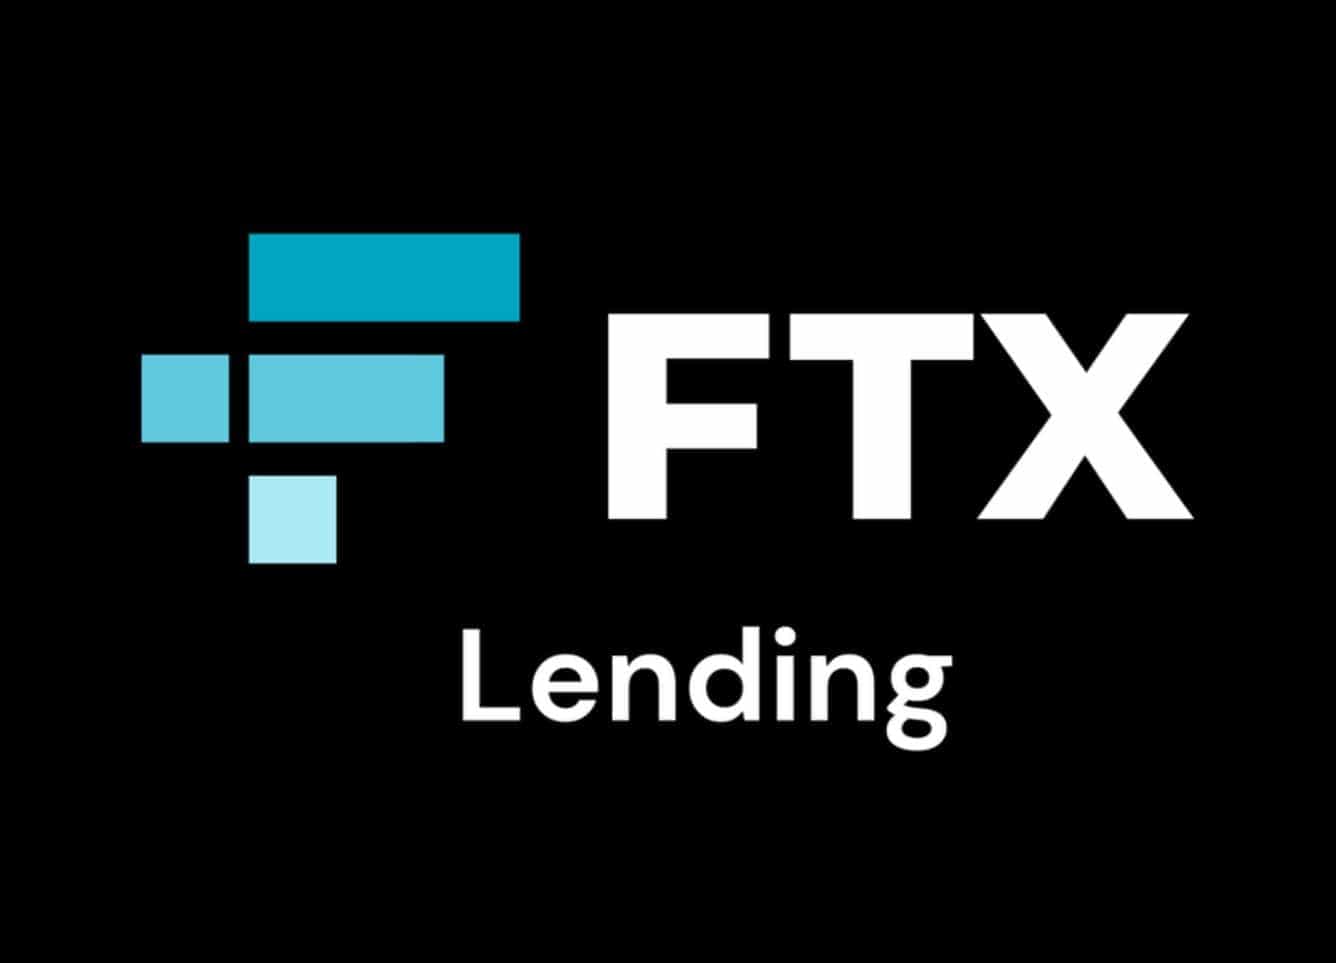 FTX Lending